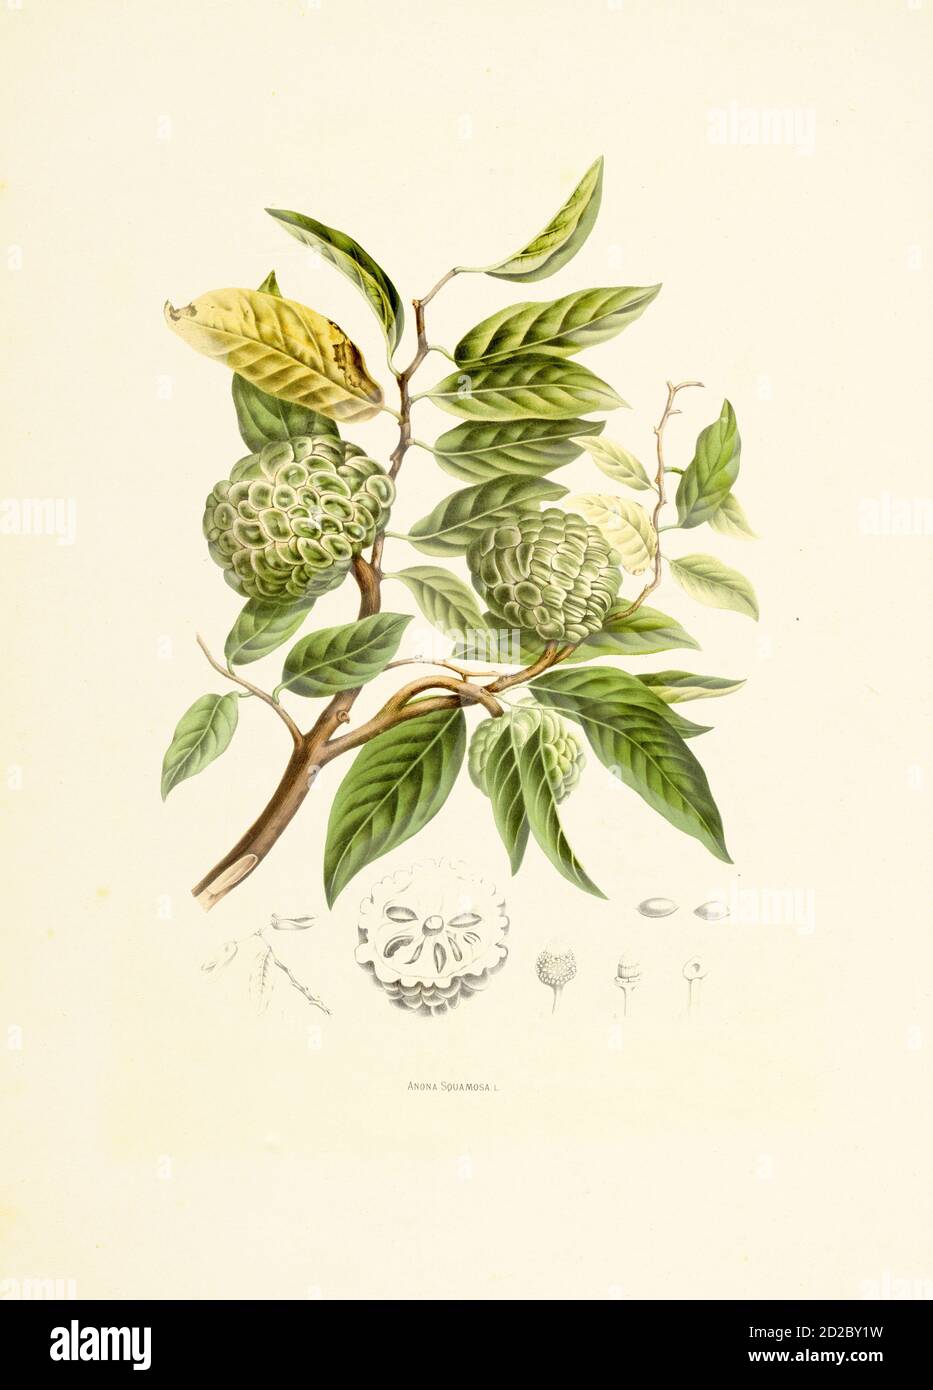 Gravure antique du XIXe siècle d'une couronne de squamosa, également connue sous le nom de pomme de sucre. Illustration de Berthe Hoola van Nooten du livre fleurs, fruits Banque D'Images